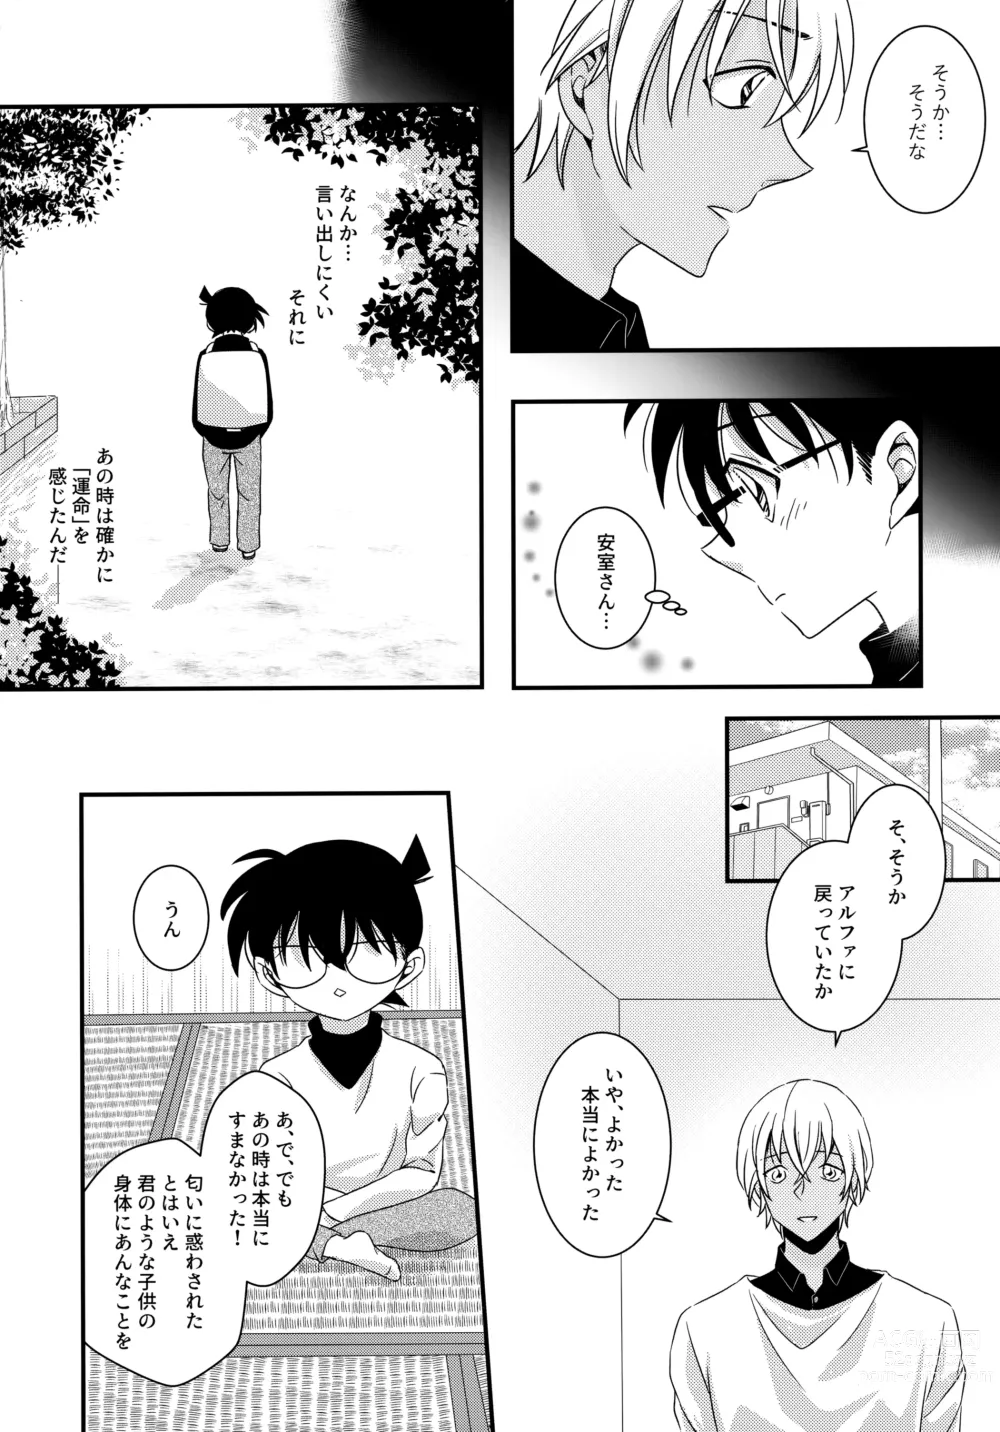 Page 36 of doujinshi Kimi to Himitsu no 7 Kakan